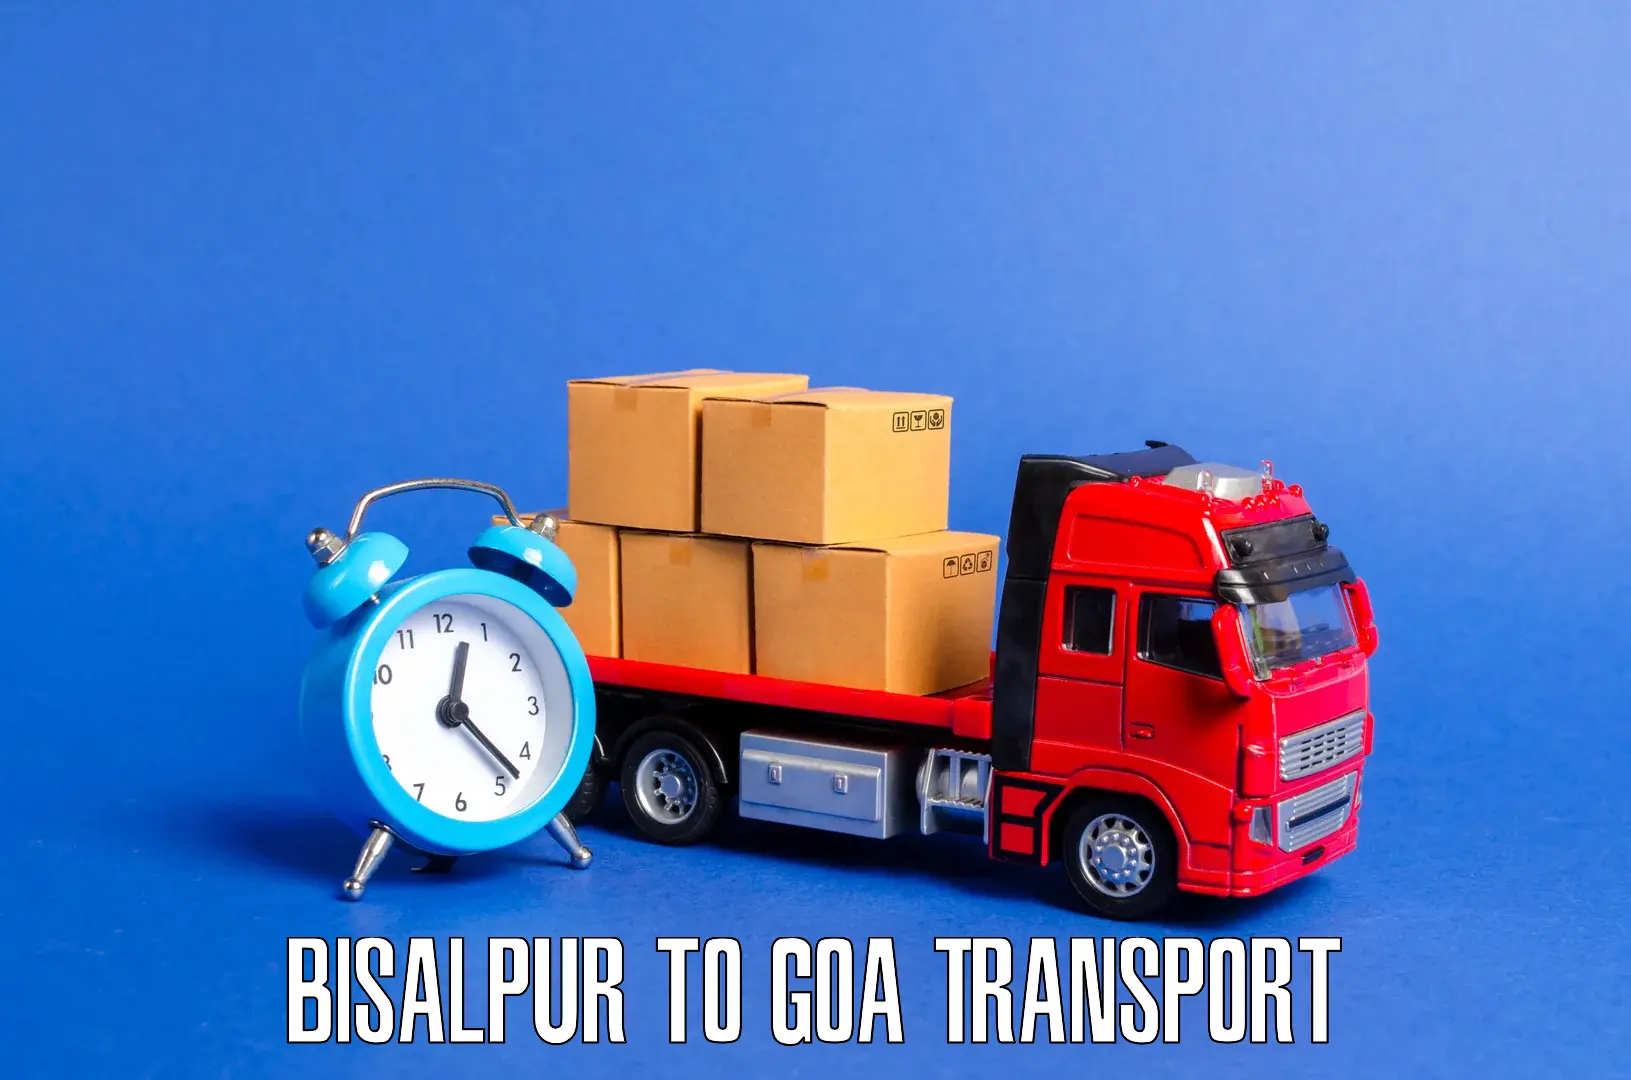 Furniture transport service Bisalpur to Panjim